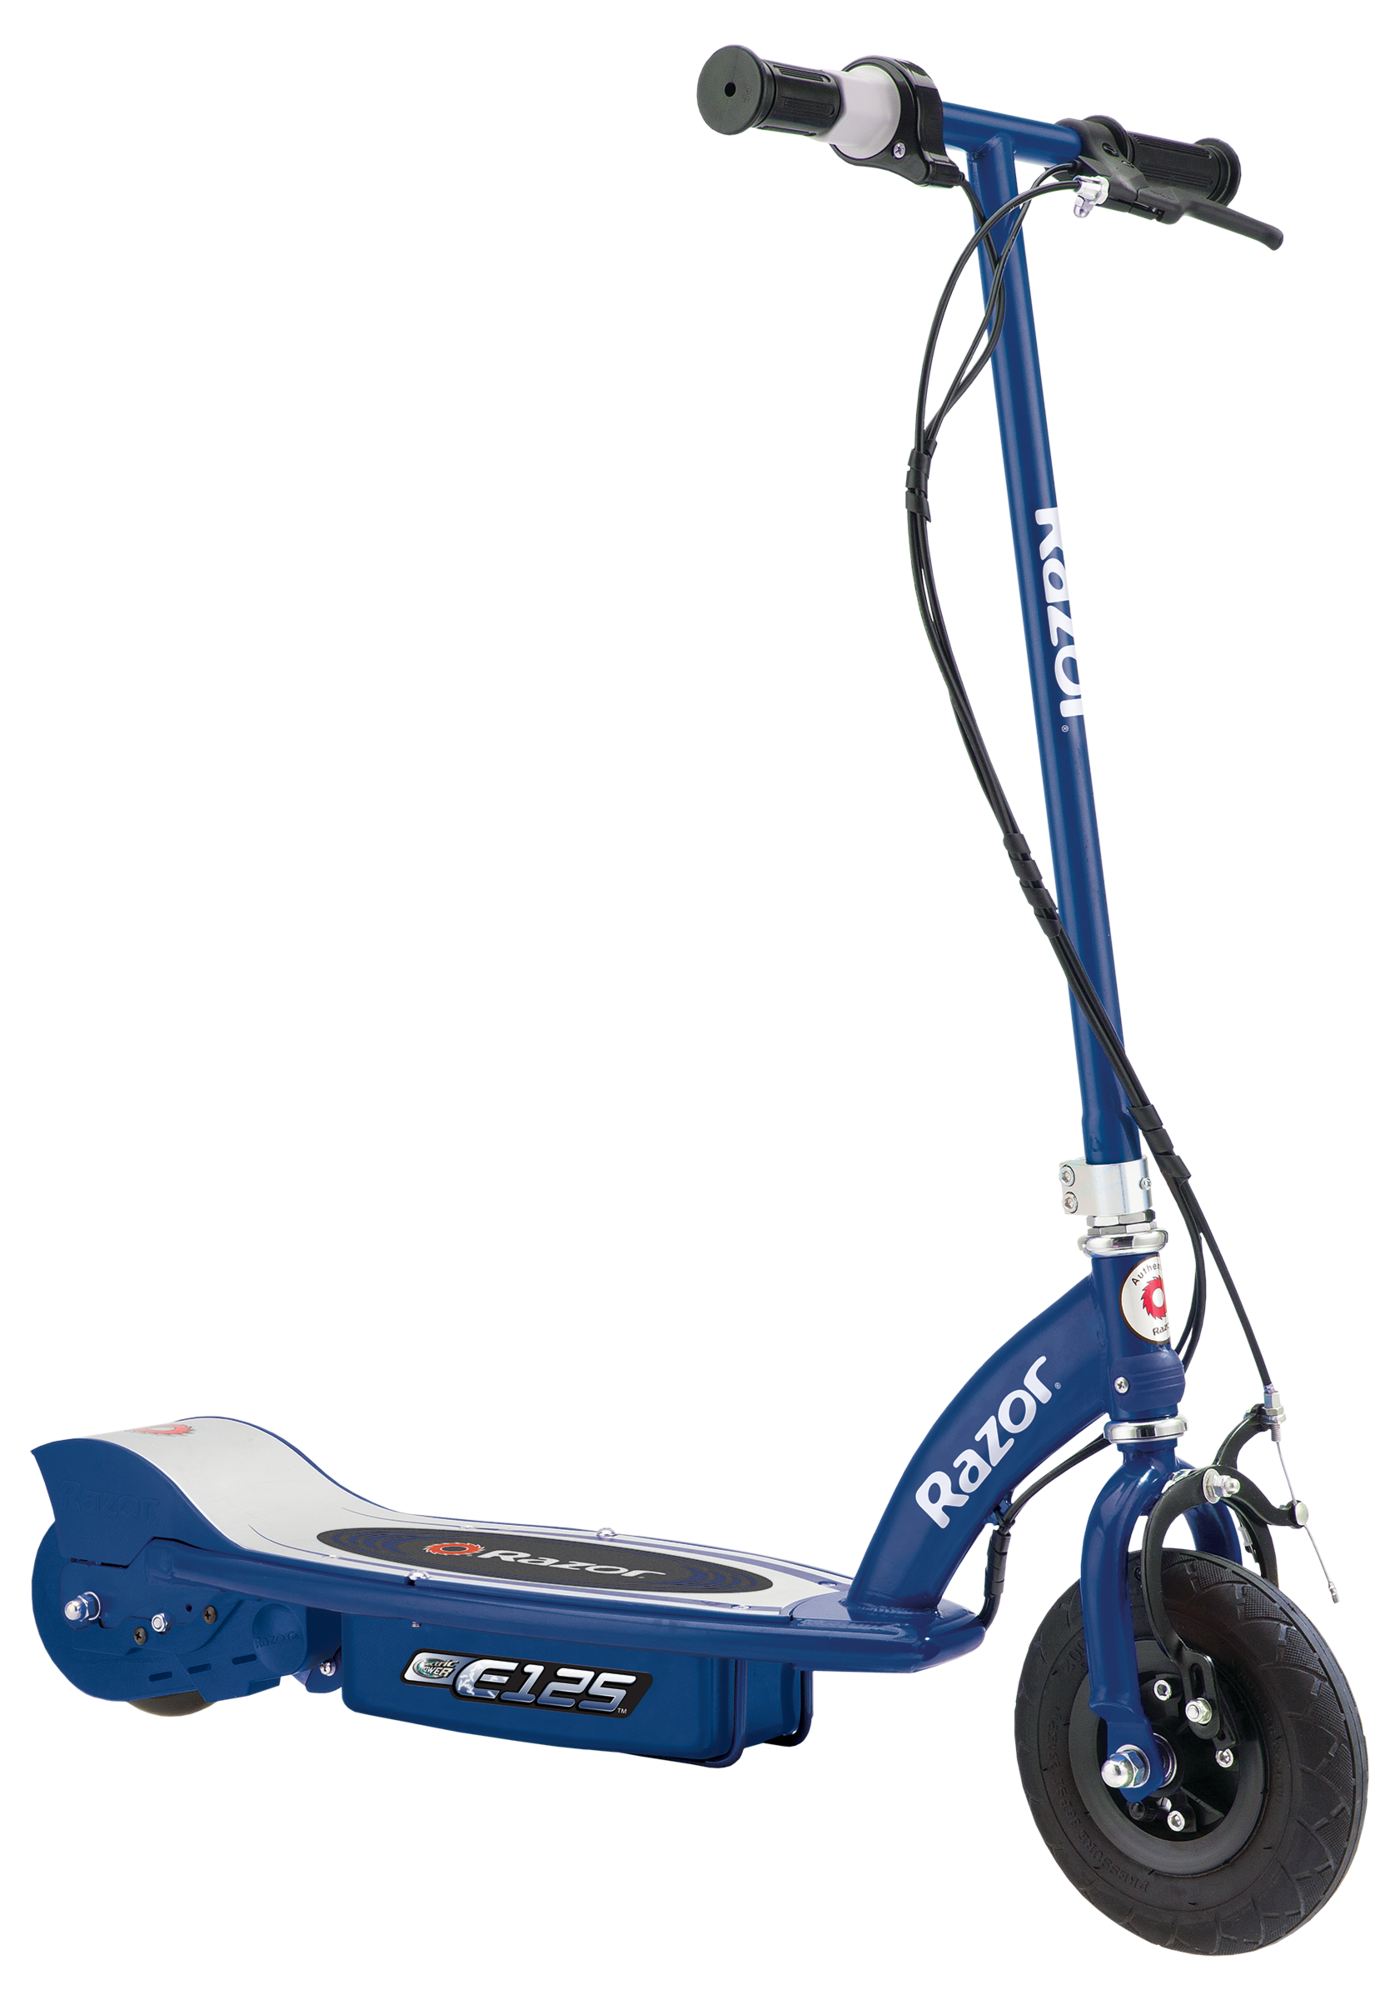 E125 Electric Scooter - Razor